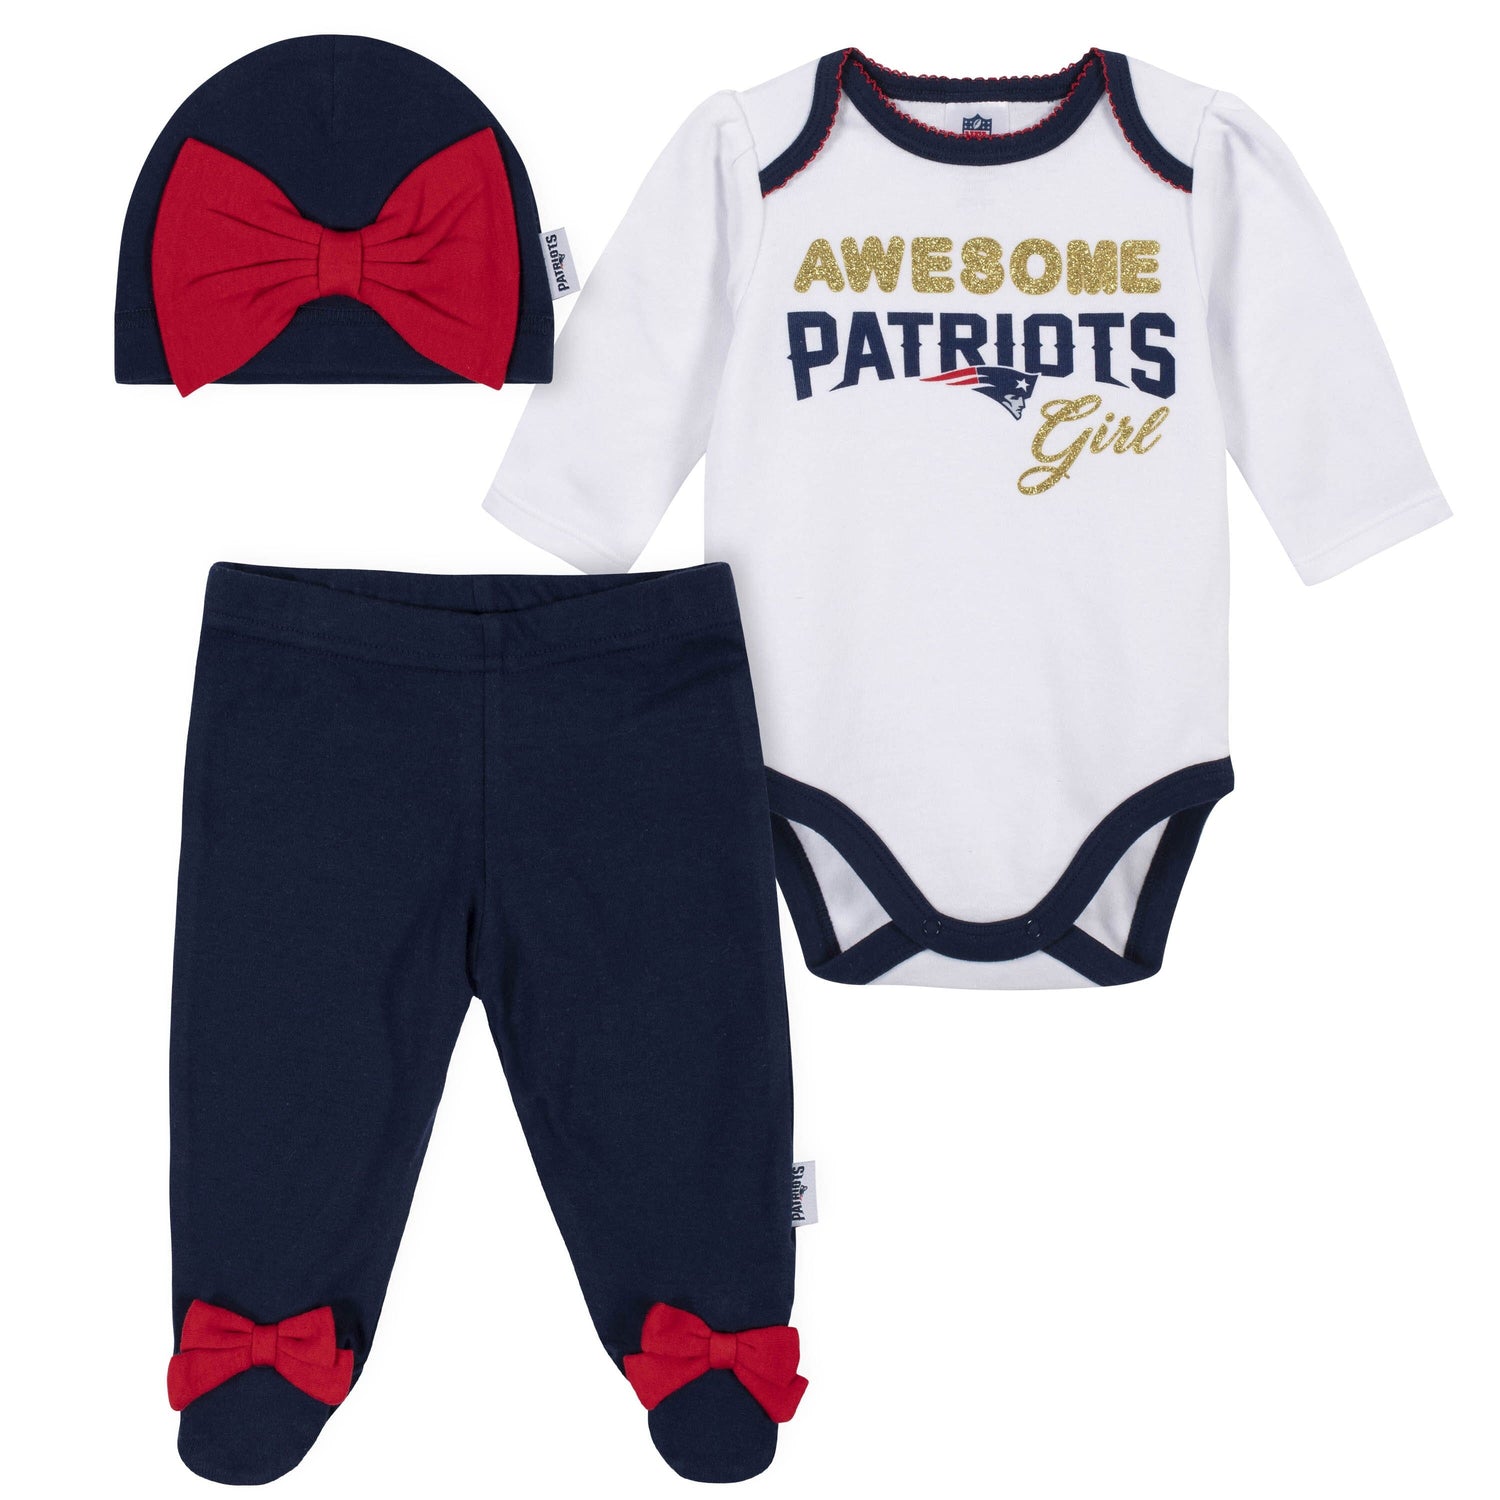 nfl patriots baby gear